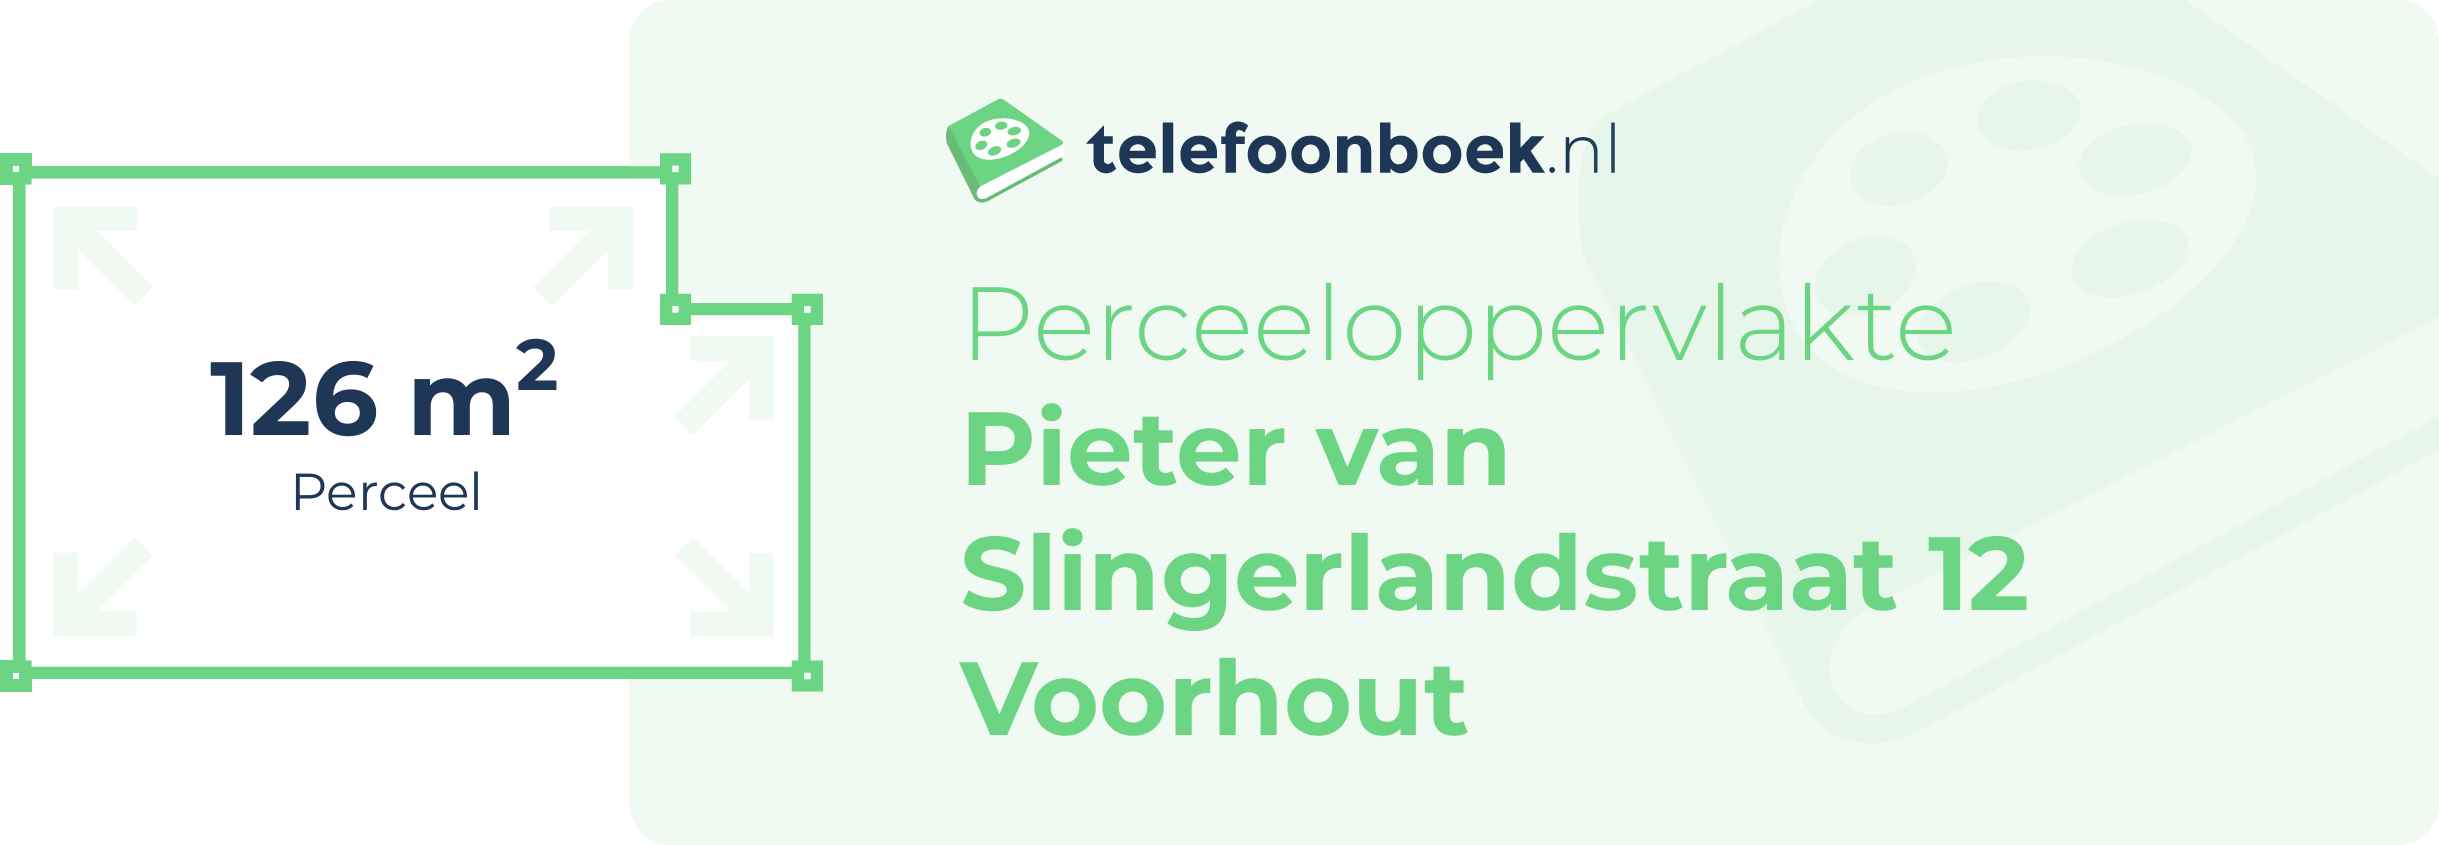 Perceeloppervlakte Pieter Van Slingerlandstraat 12 Voorhout